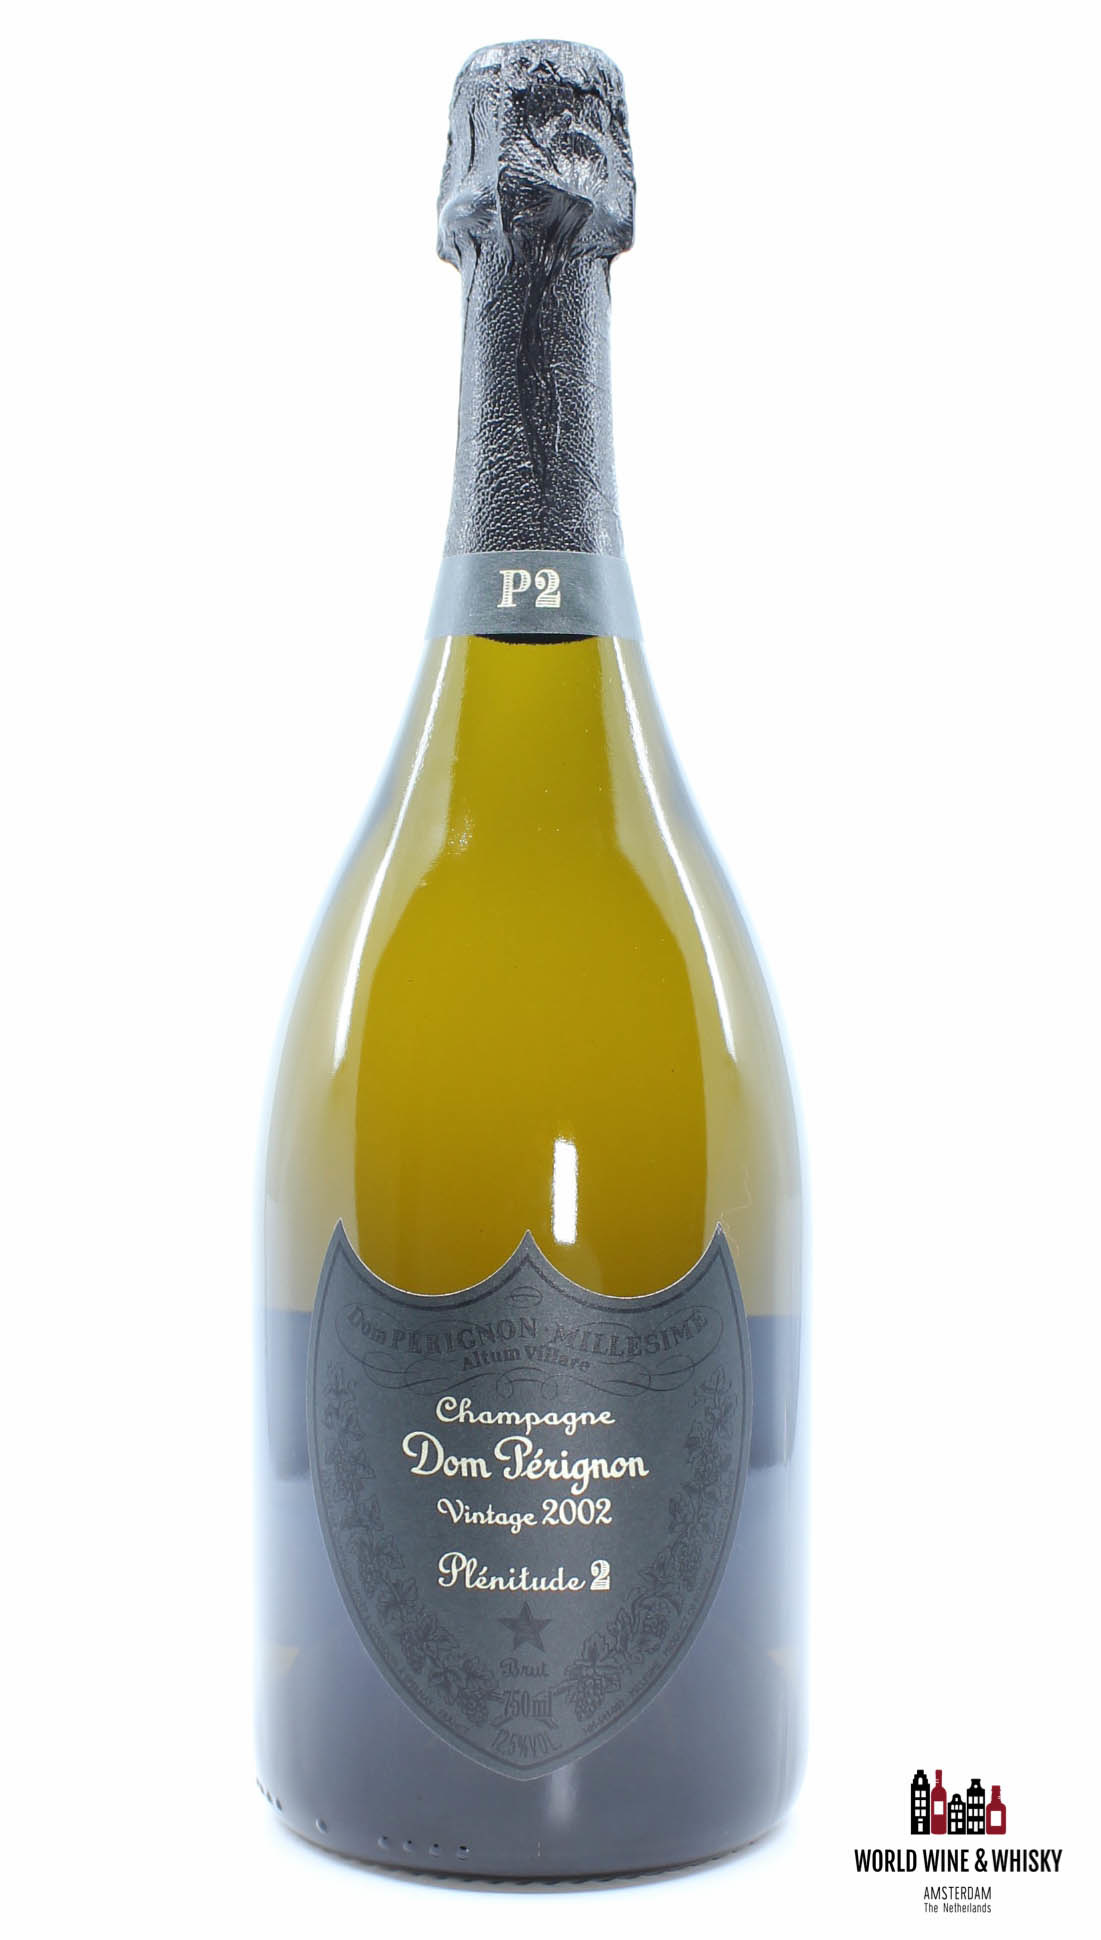 Dom Perignon Dom Perignon 2002 Vintage P2 Plénitude 2 - Champagne Brut